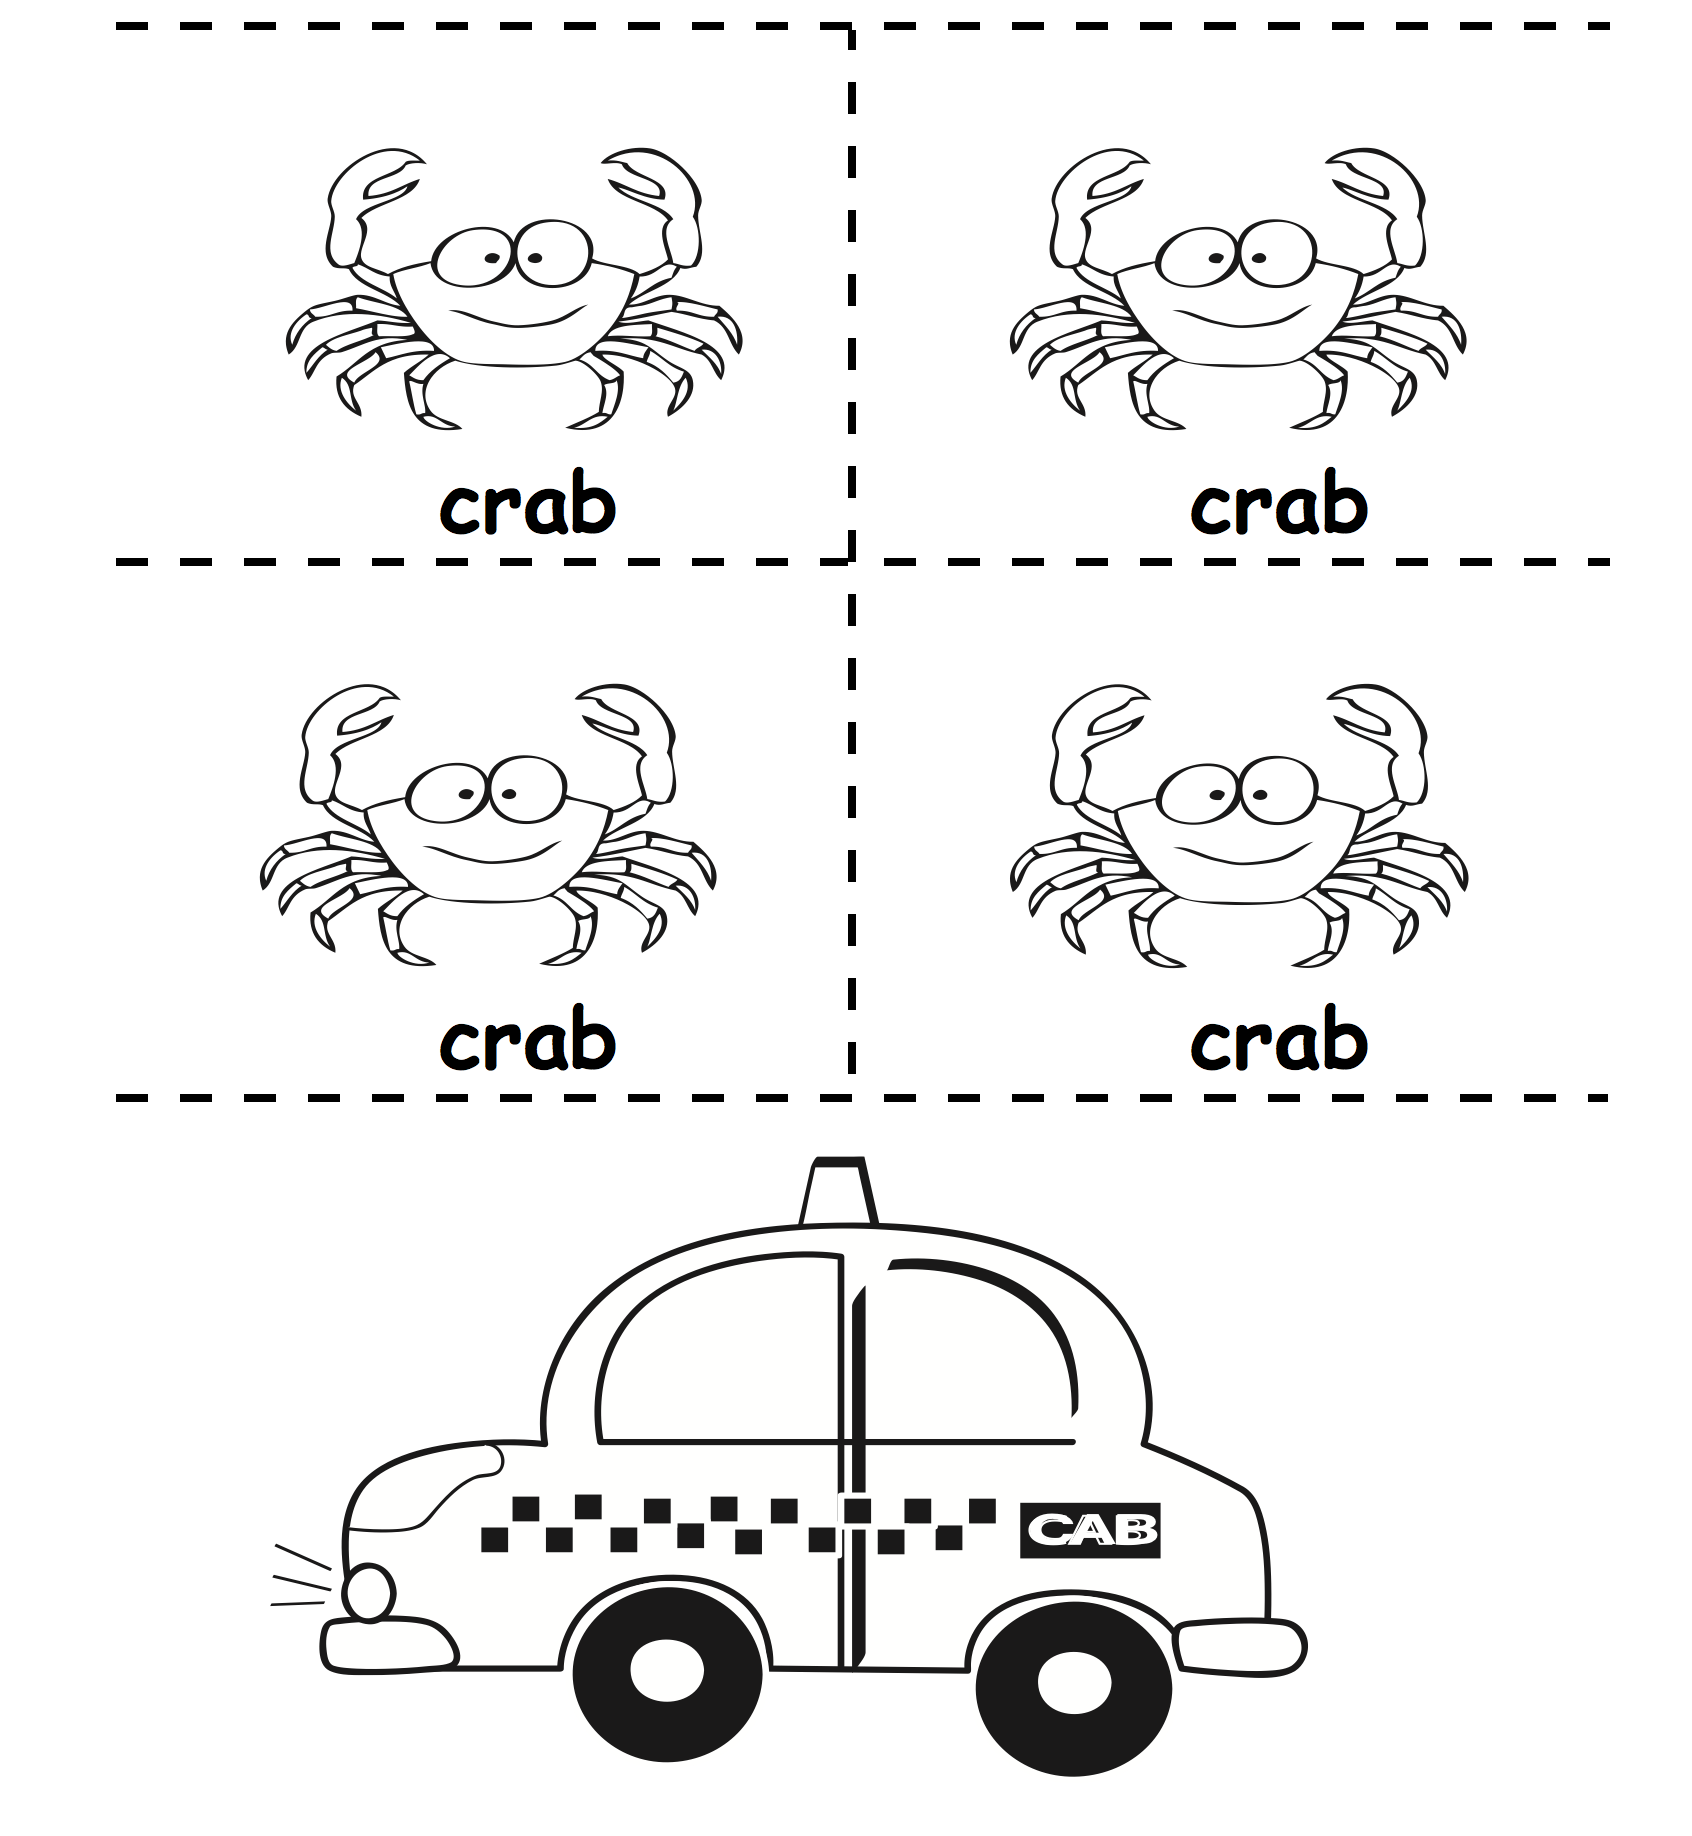 Crab-cab-graphics